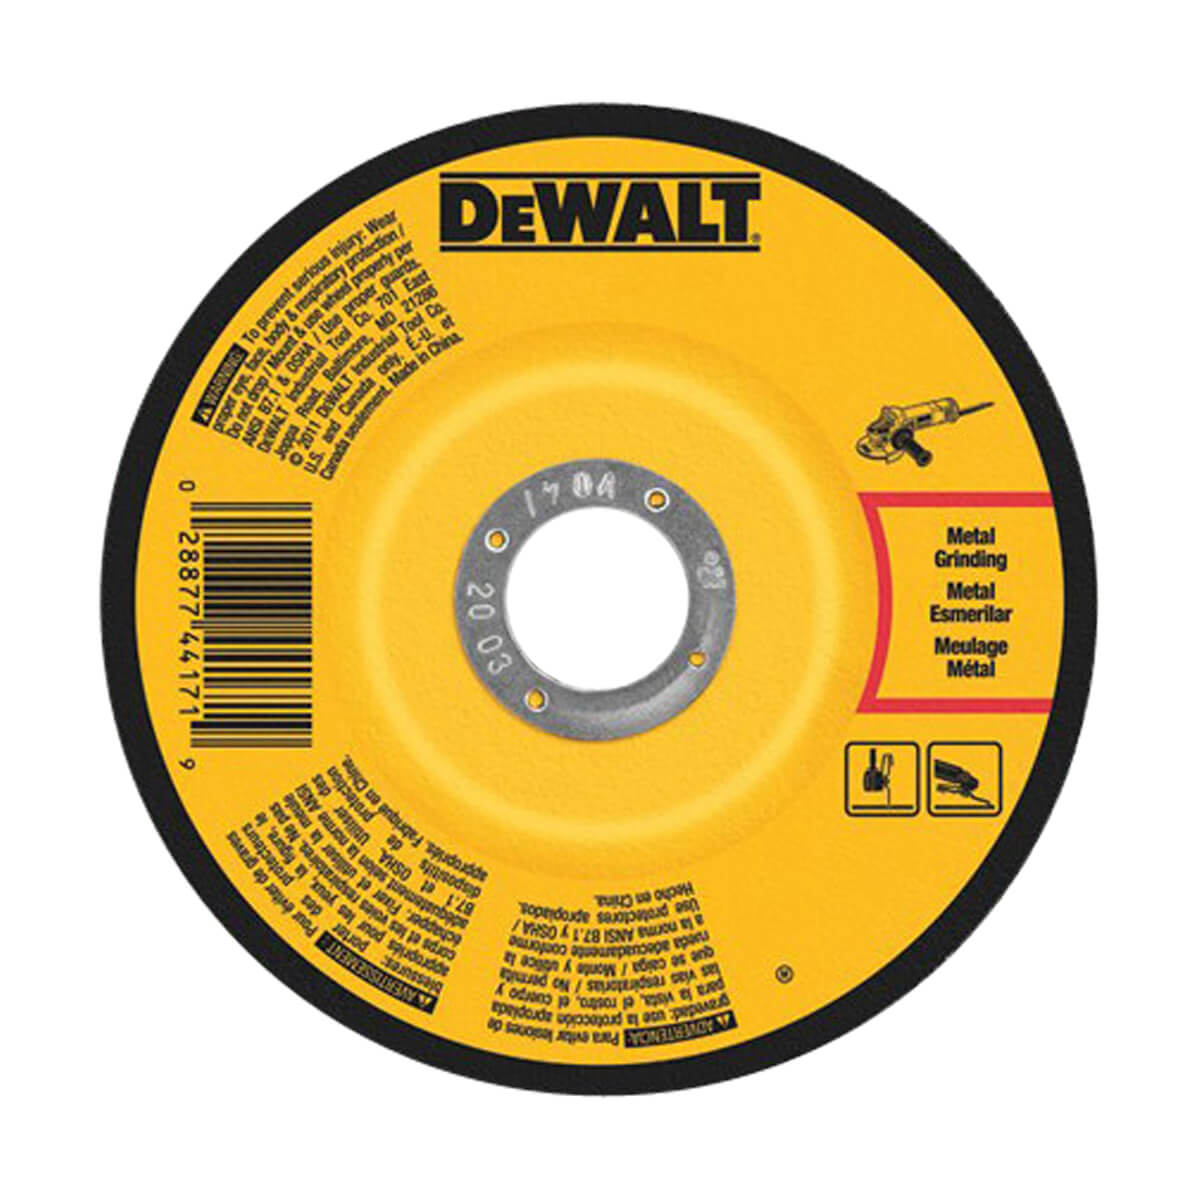 DEWALT Concrete/Masonry Cutting Wheel - 5-in x 1/8-in x 7/8-in